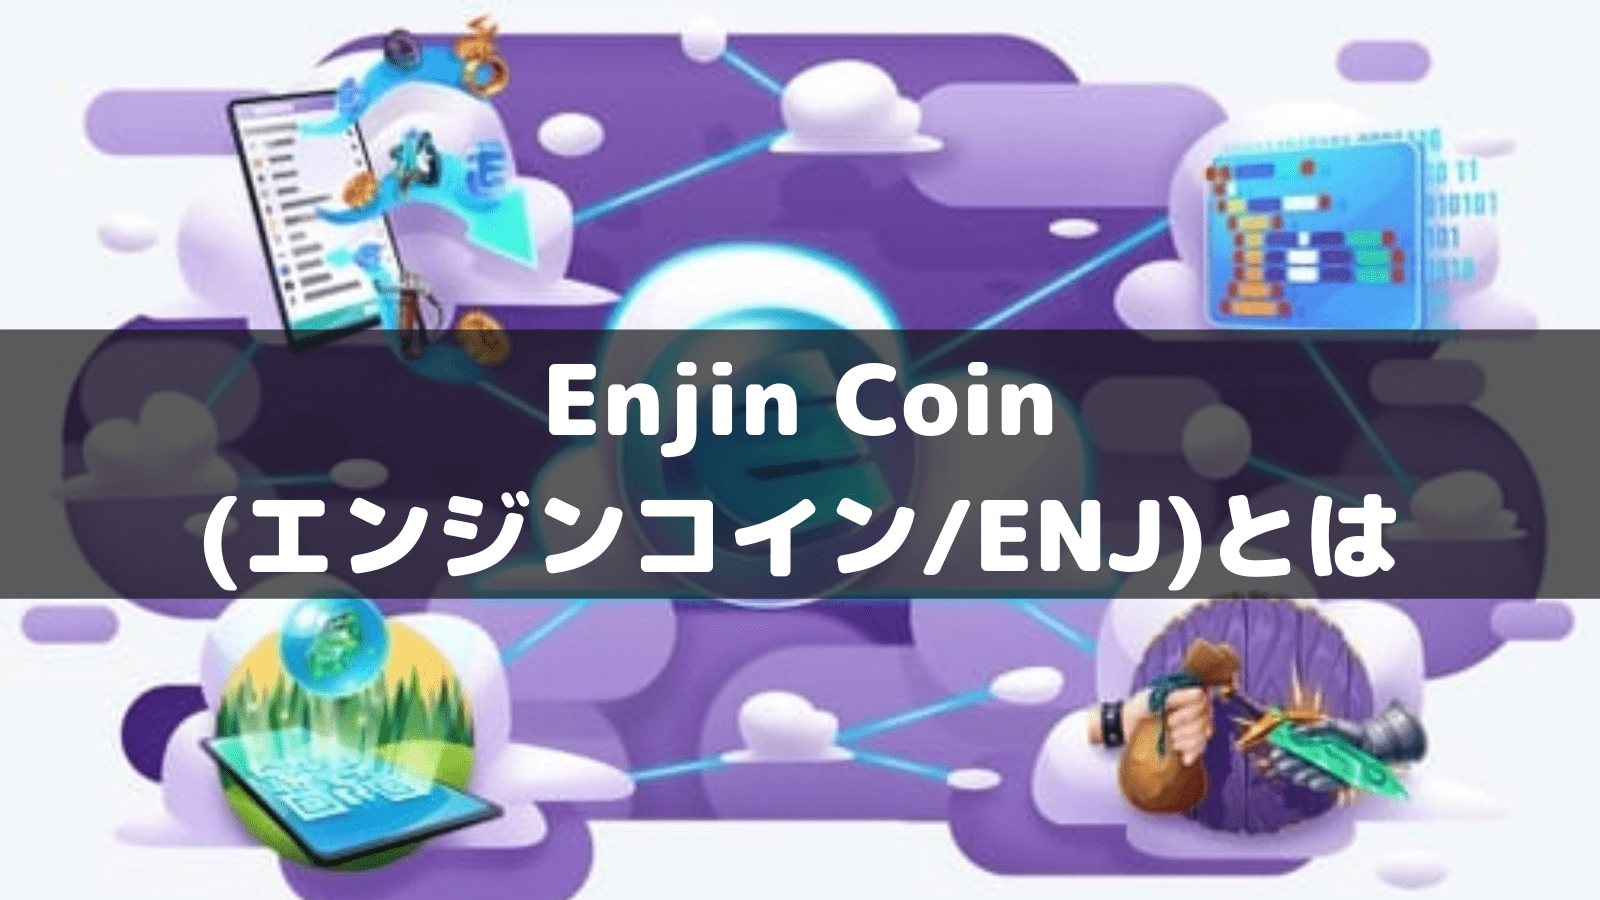 仮想通貨enjin Coin エンジンコイン Enj とは 特徴 買い方 将来性 チャート ニュースを解説 Coinpartner Select 厳選した投資情報を届けます